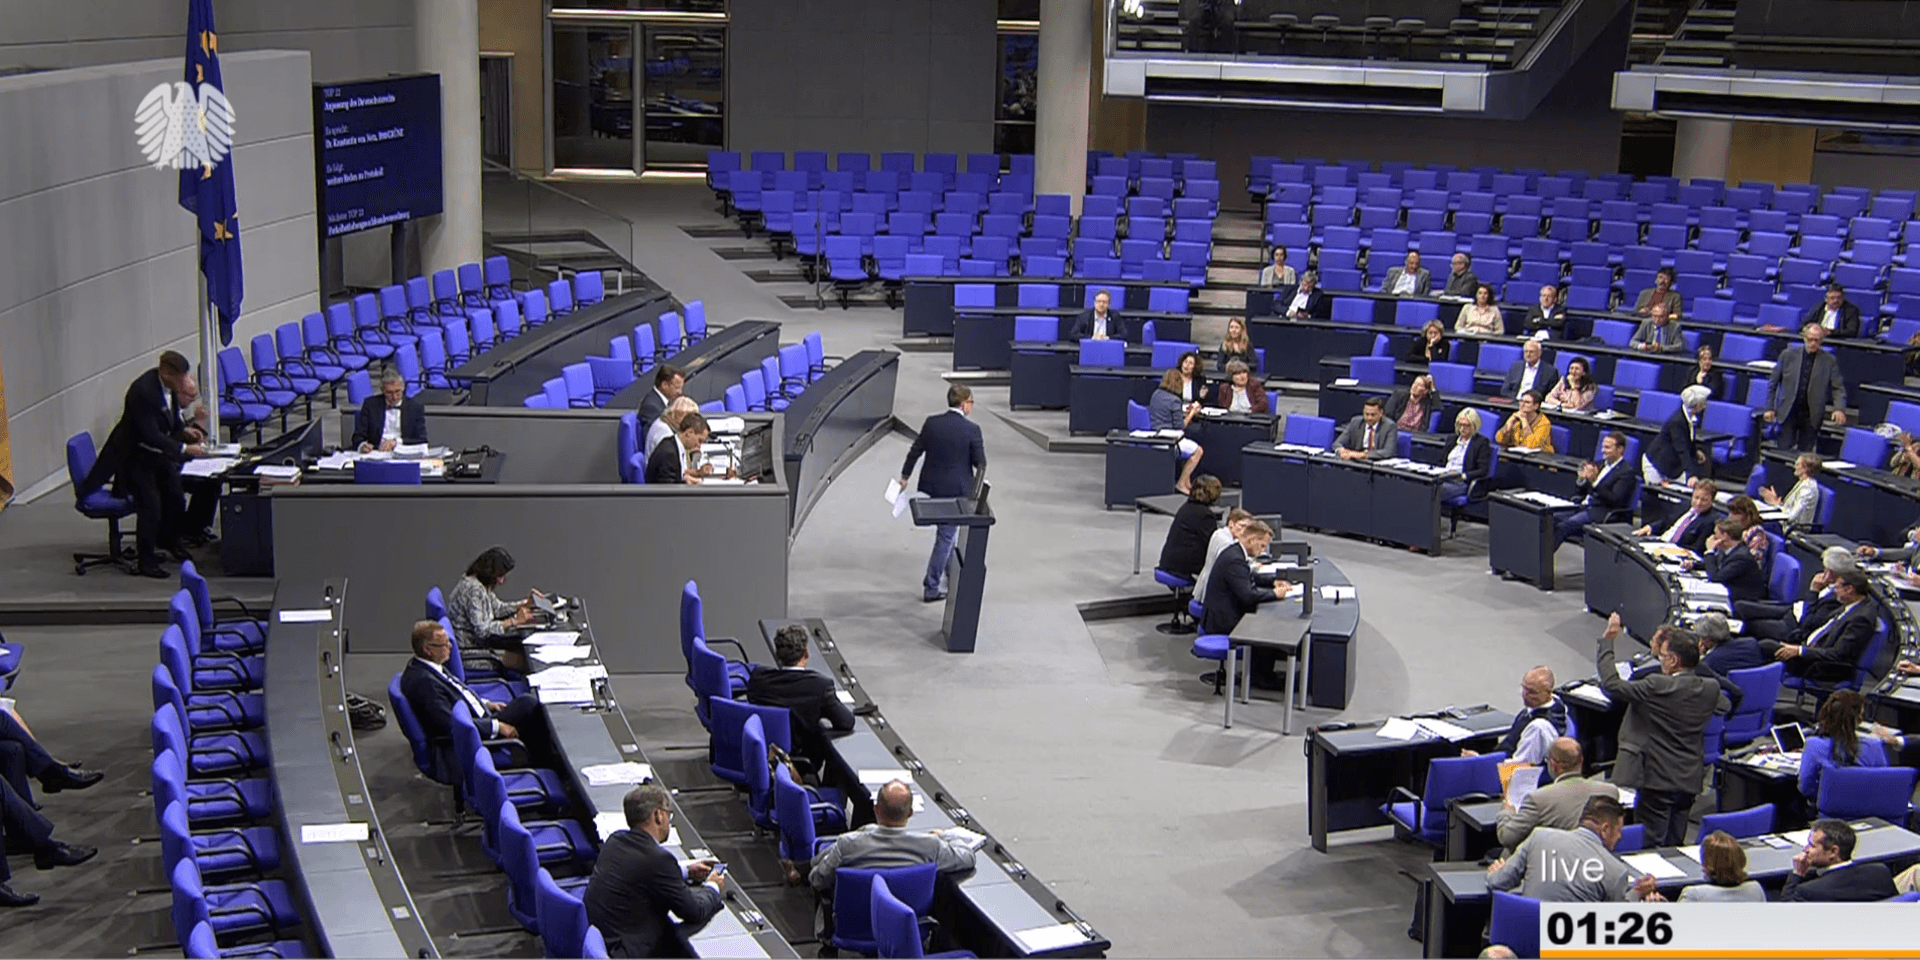 1.26 Uhr im Bundestag: AfD-Fraktionsgeschäftsführer Jürgen Braun meldet sich und beantragt wenig später einen Hammelsprung. Aber der Sitzungsvorstand, in dem nun kein AfD-Schritführer mehr sitzt, erklärt das einmütig für unnötig.